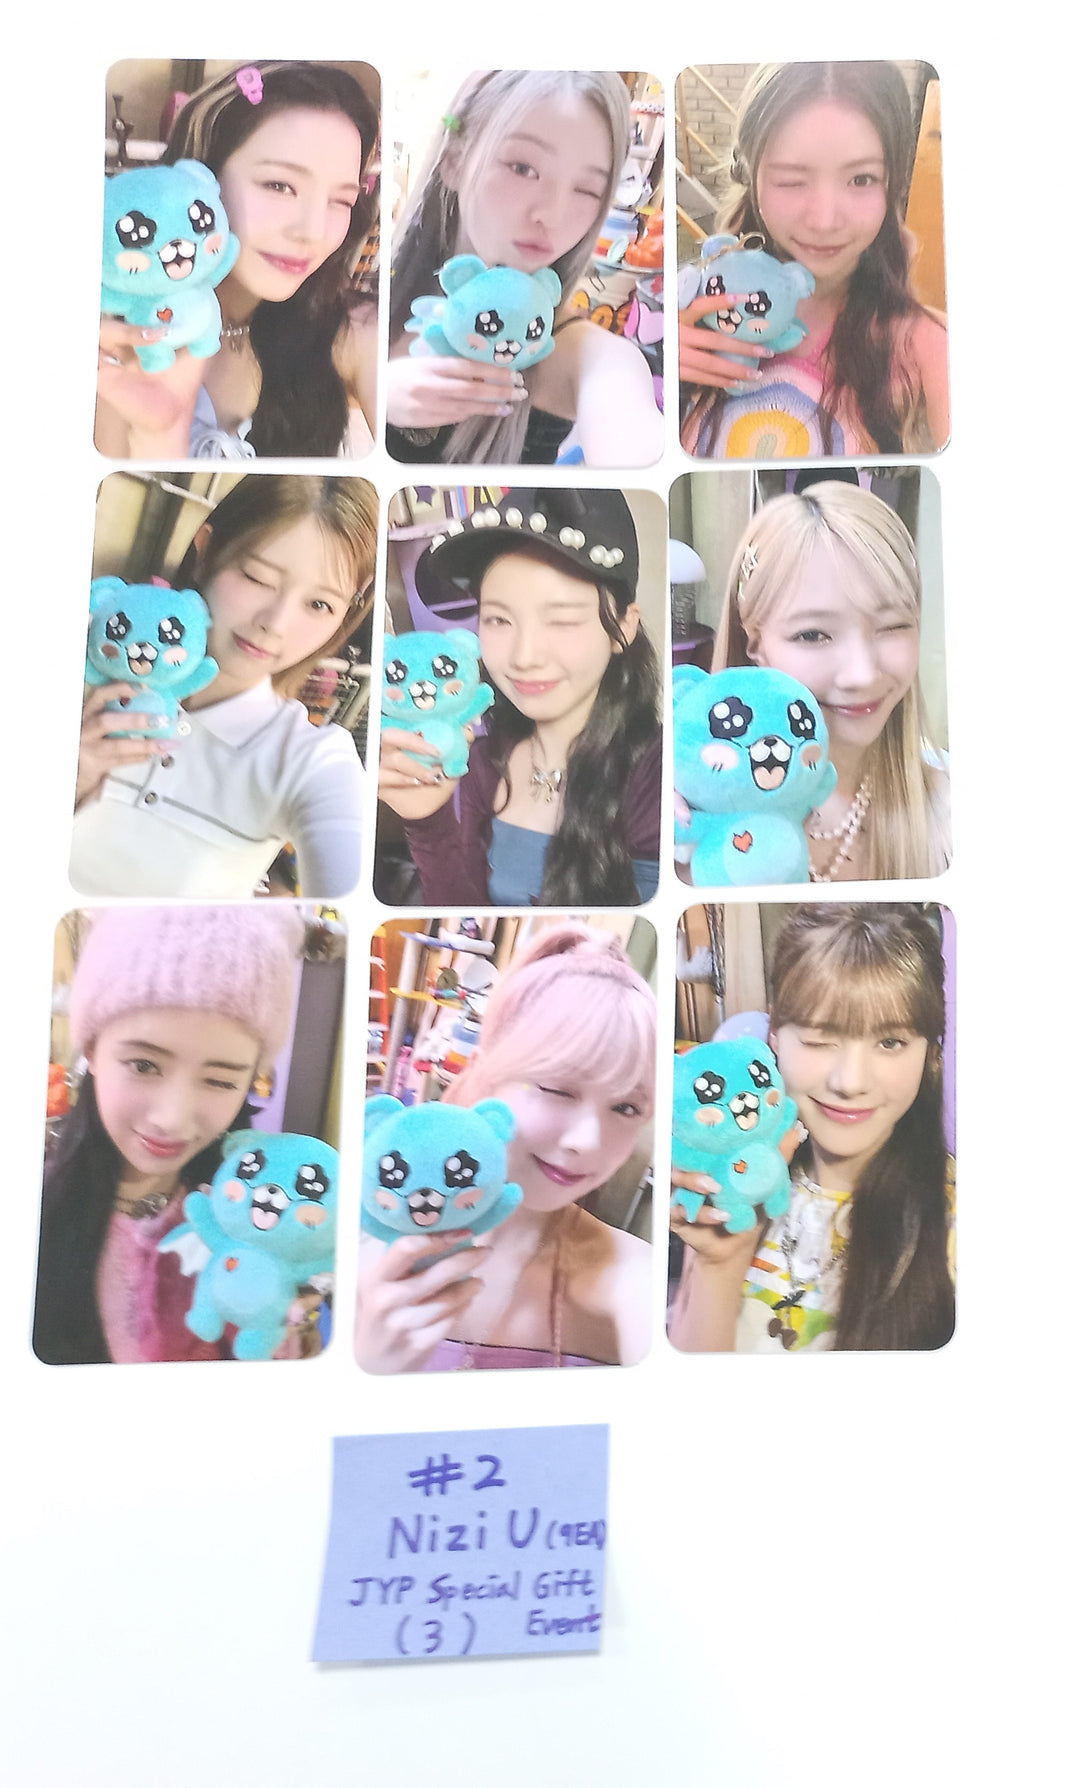 NiziU "Press Play" KOREA 1st Single Album - JYP Shop Special Gift Event Photocards Set (9EA) [24.1.30]